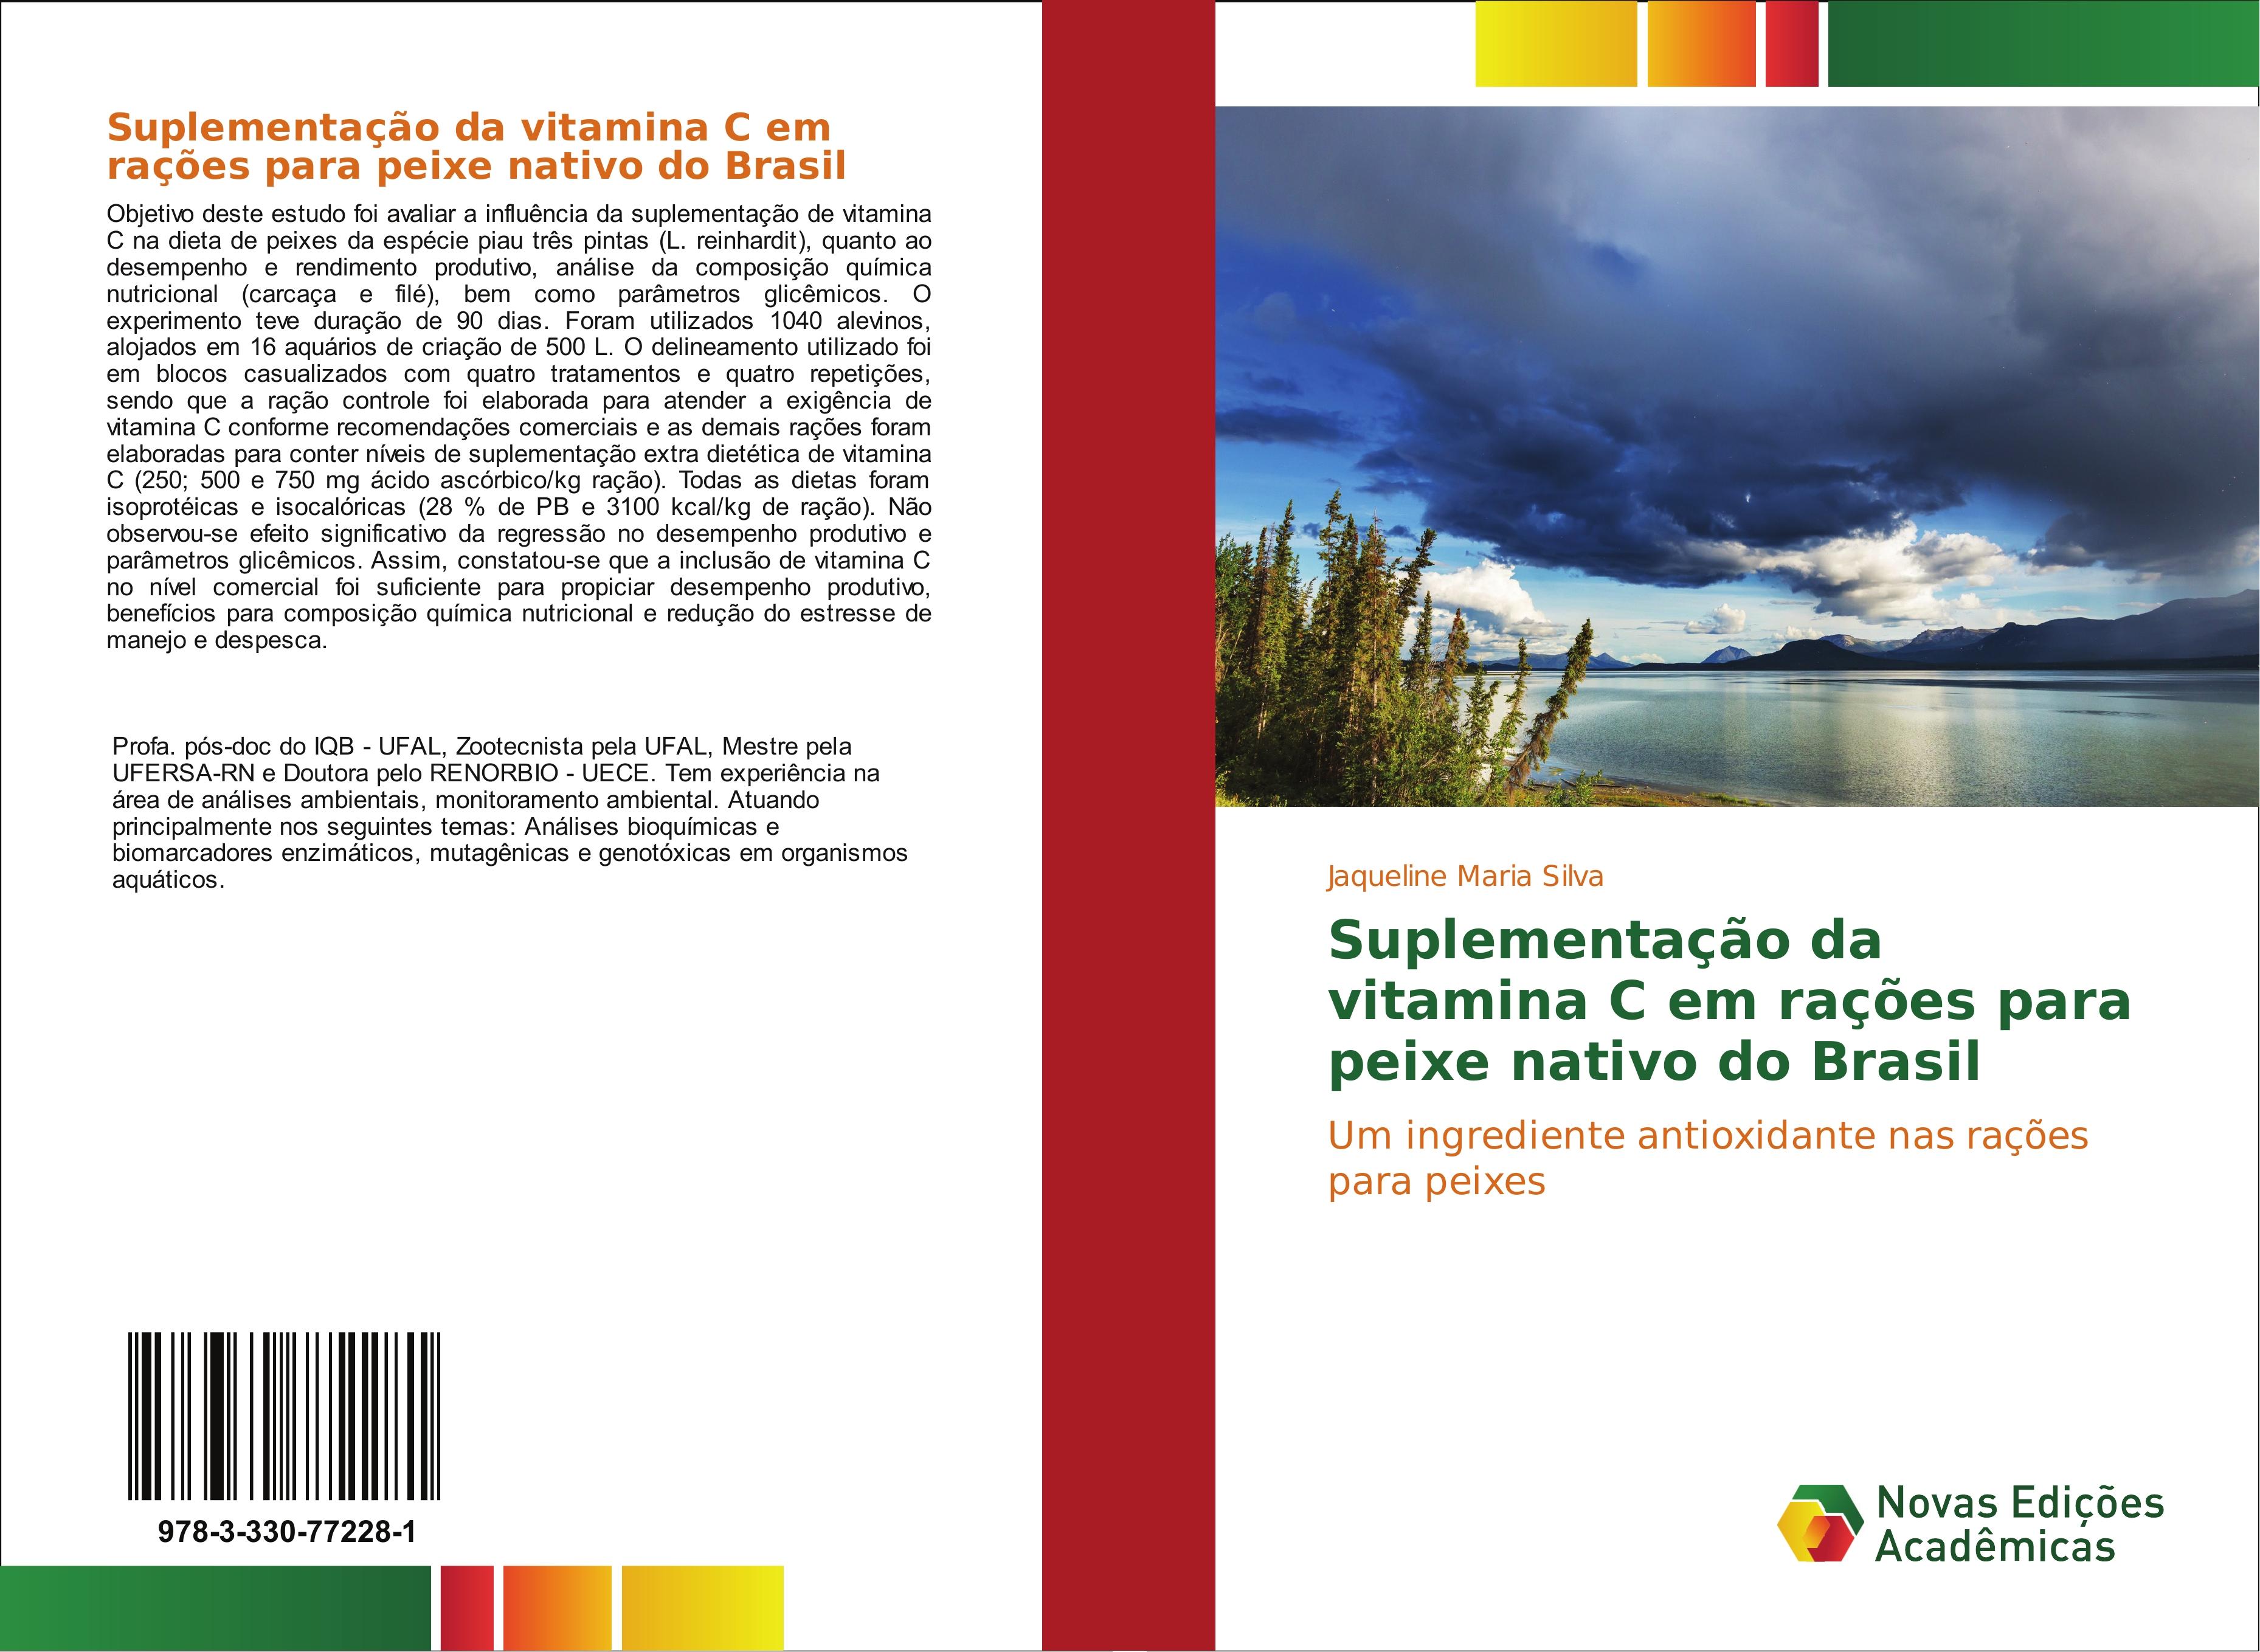 SuplementaÃ§Ã£o da vitamina C em raÃ§Ãµes para peixe nativo do Brasil - Jaqueline Maria Silva